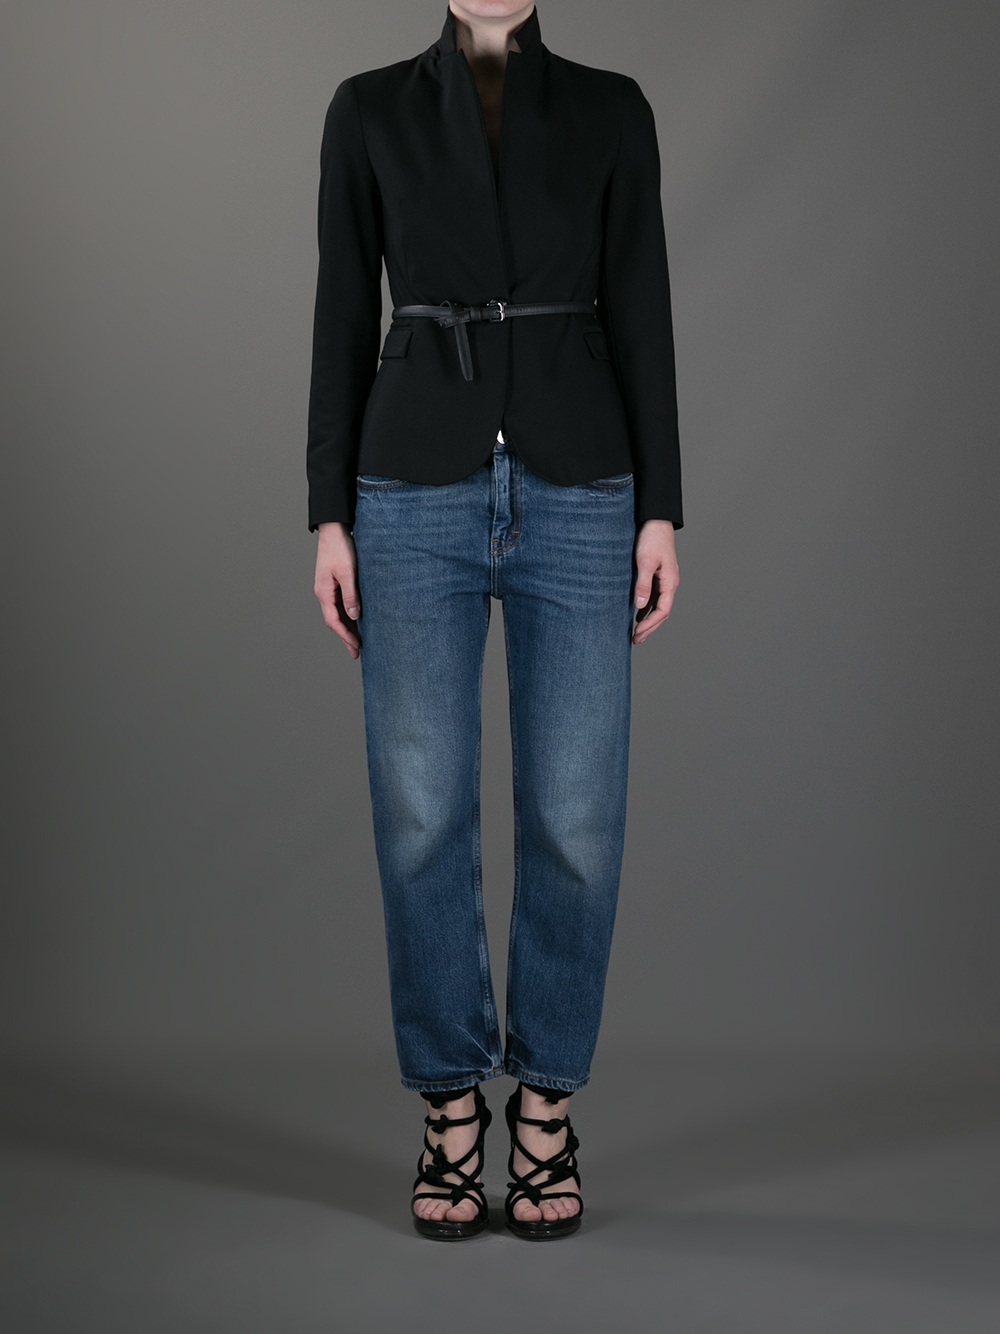 Acne Studios Pop Vintage Jean in Blue - Lyst